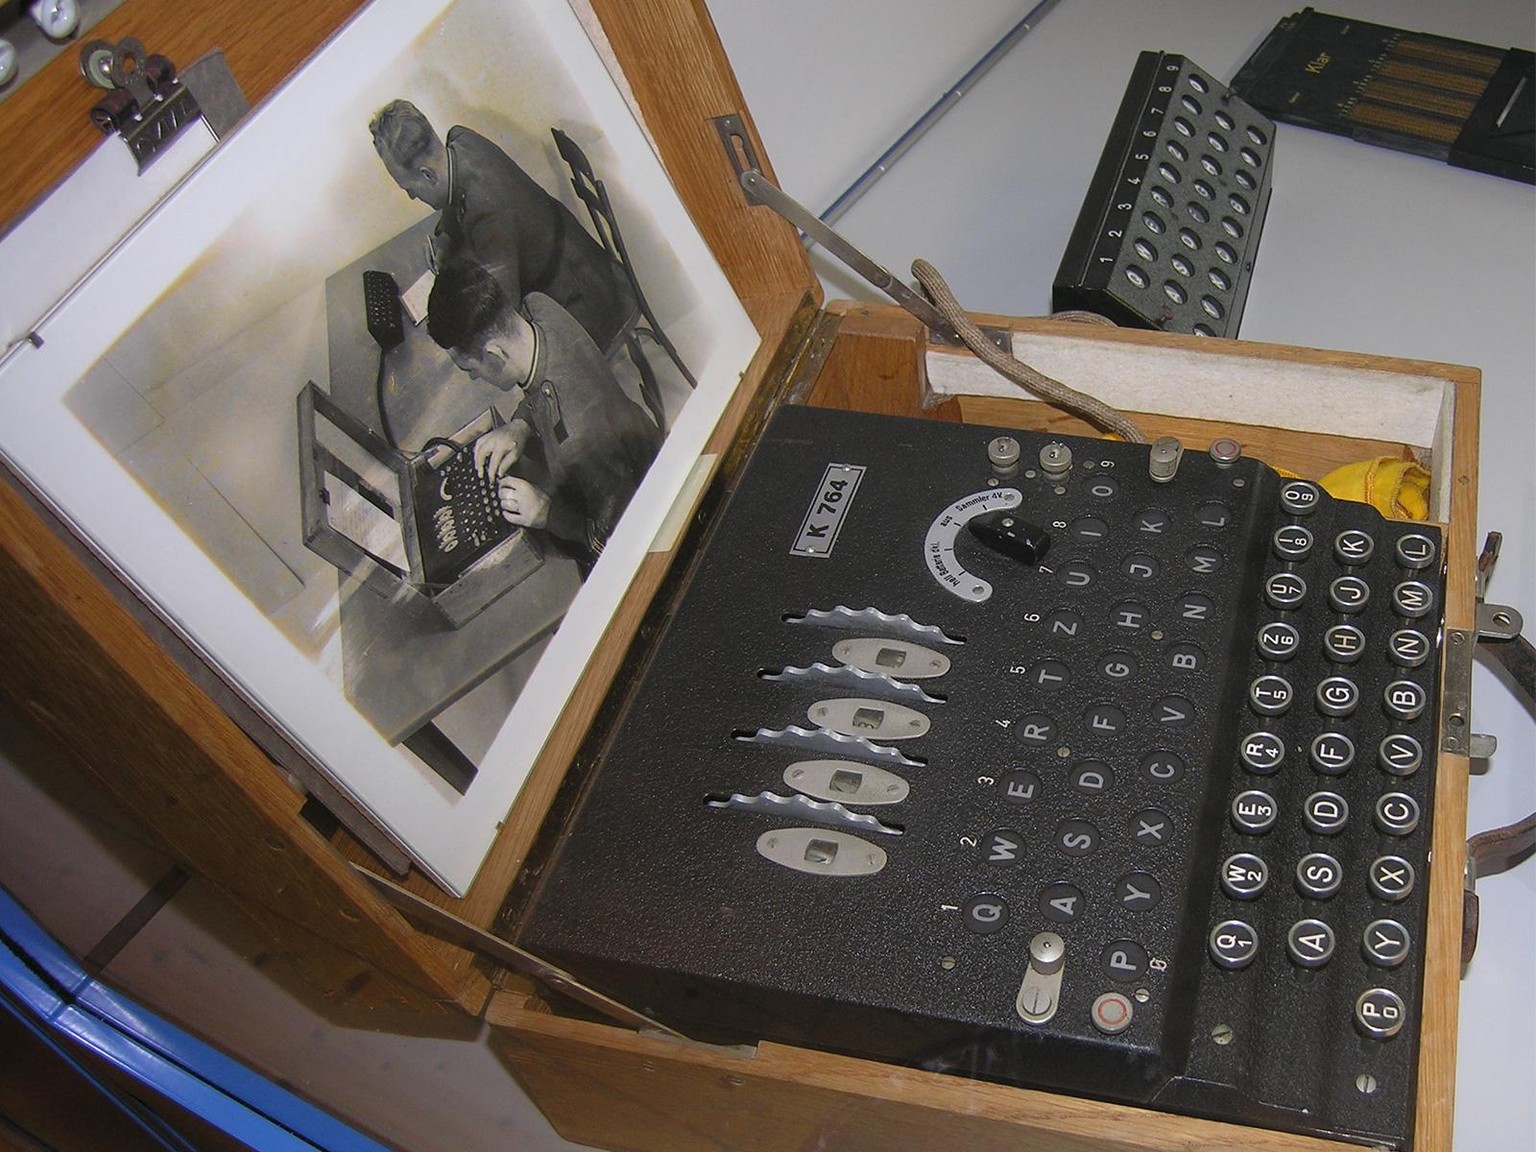 Die Enigma-K, welche die Schweiz im Zweiten Weltkrieg verwendete, war leicht zu knacken.
https://commons.wikimedia.org/wiki/File:Swiss_enigma.jpg